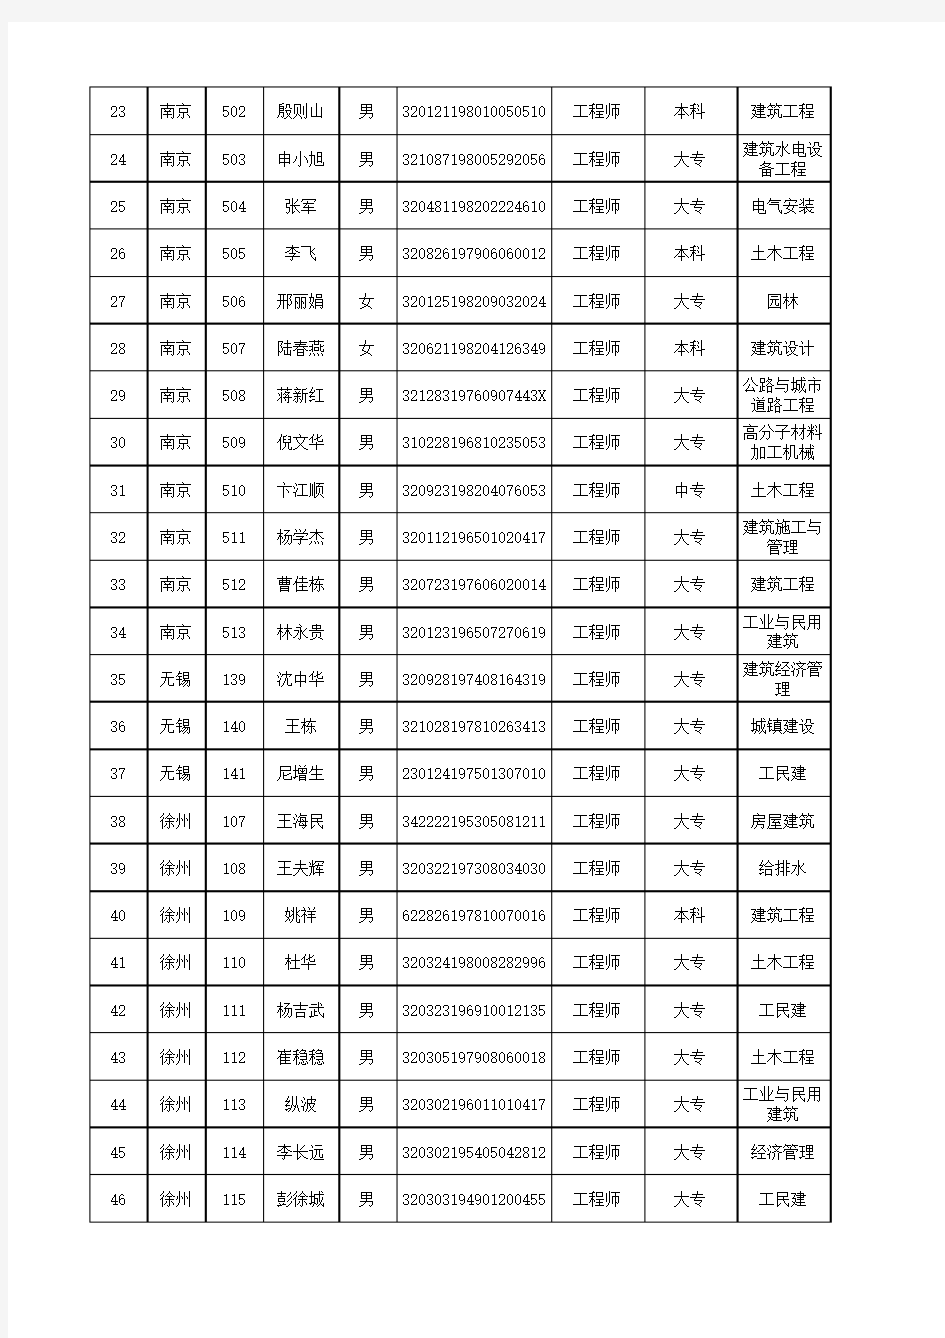 2010年江苏省监理工程师考试合格人员证号(第二批)